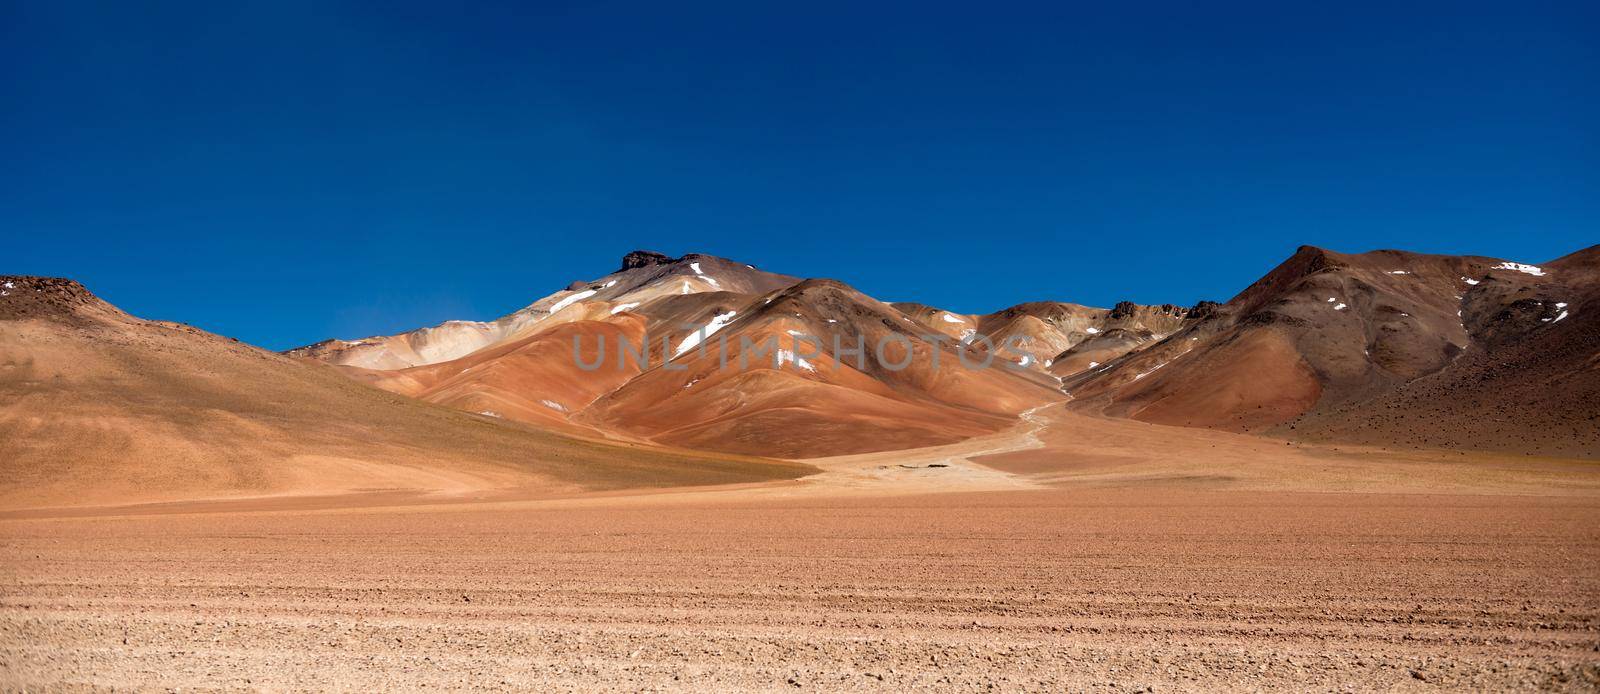 Panoramic view of sunshine Bolivian desert by tan4ikk1